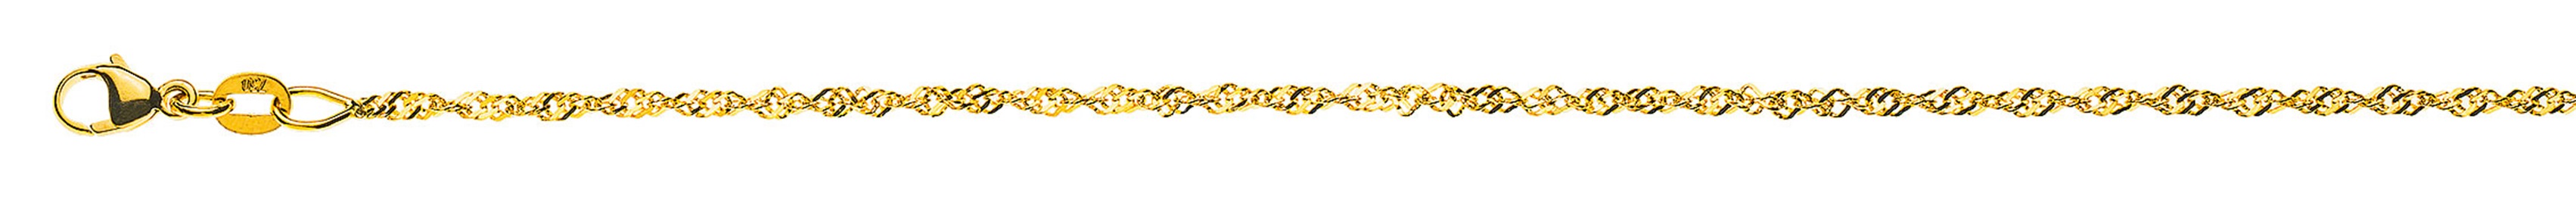 AURONOS Prestige Necklace Yellow Gold 18K Singapore Chain 38cm 1.5mm